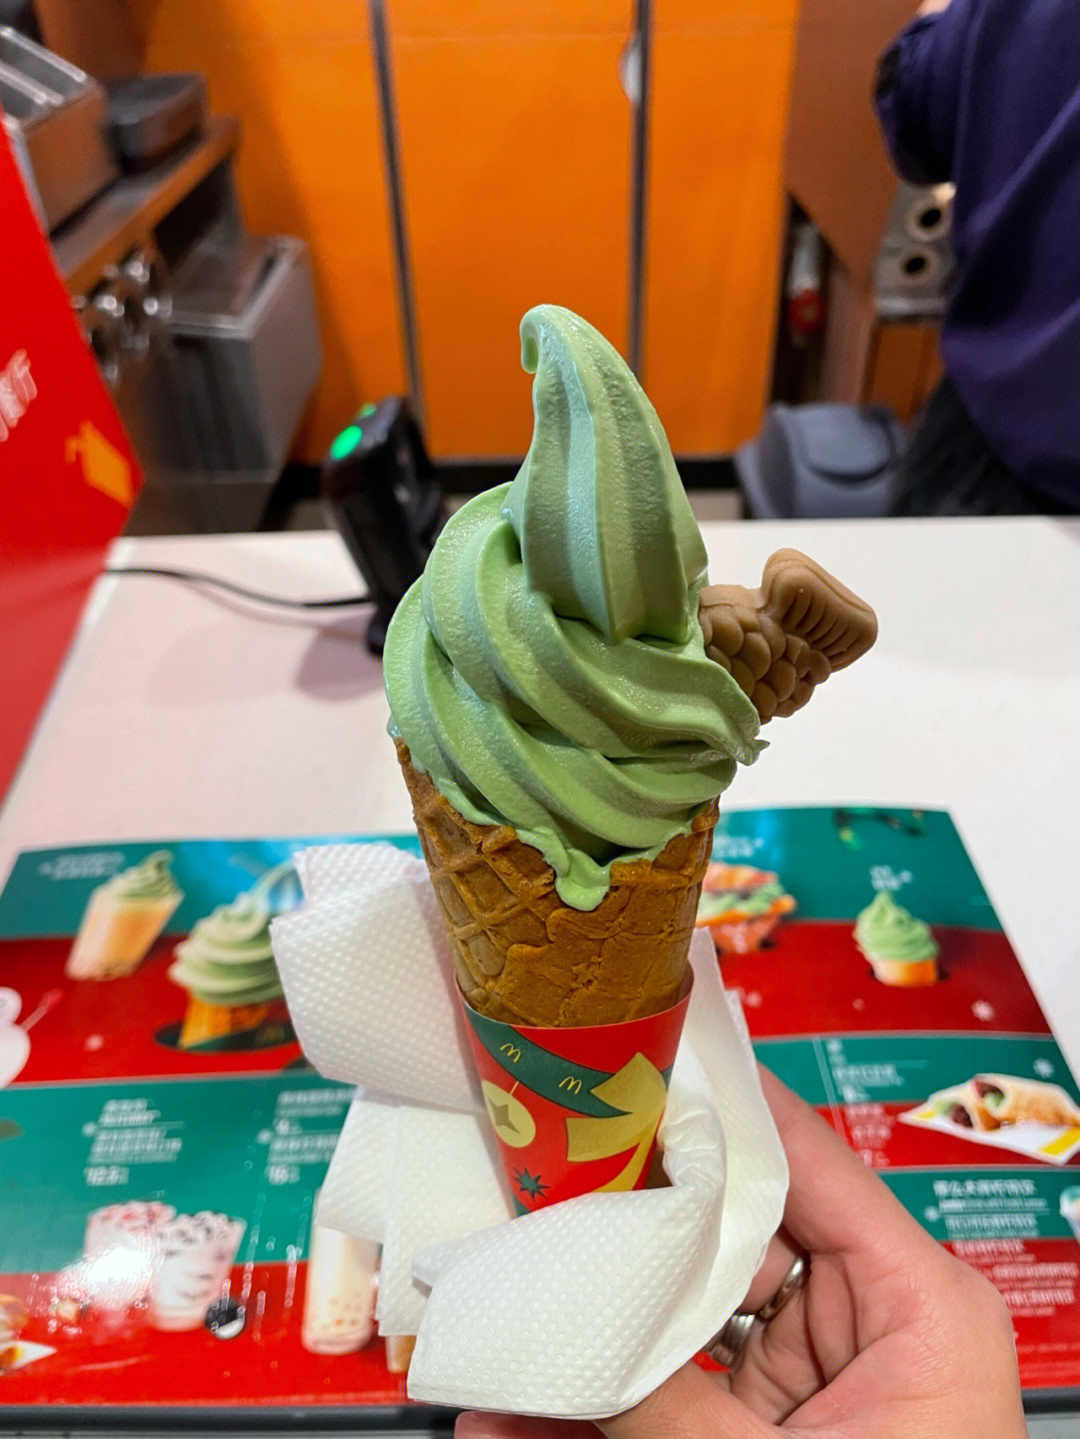 麦当劳蜜瓜冰淇淋图片